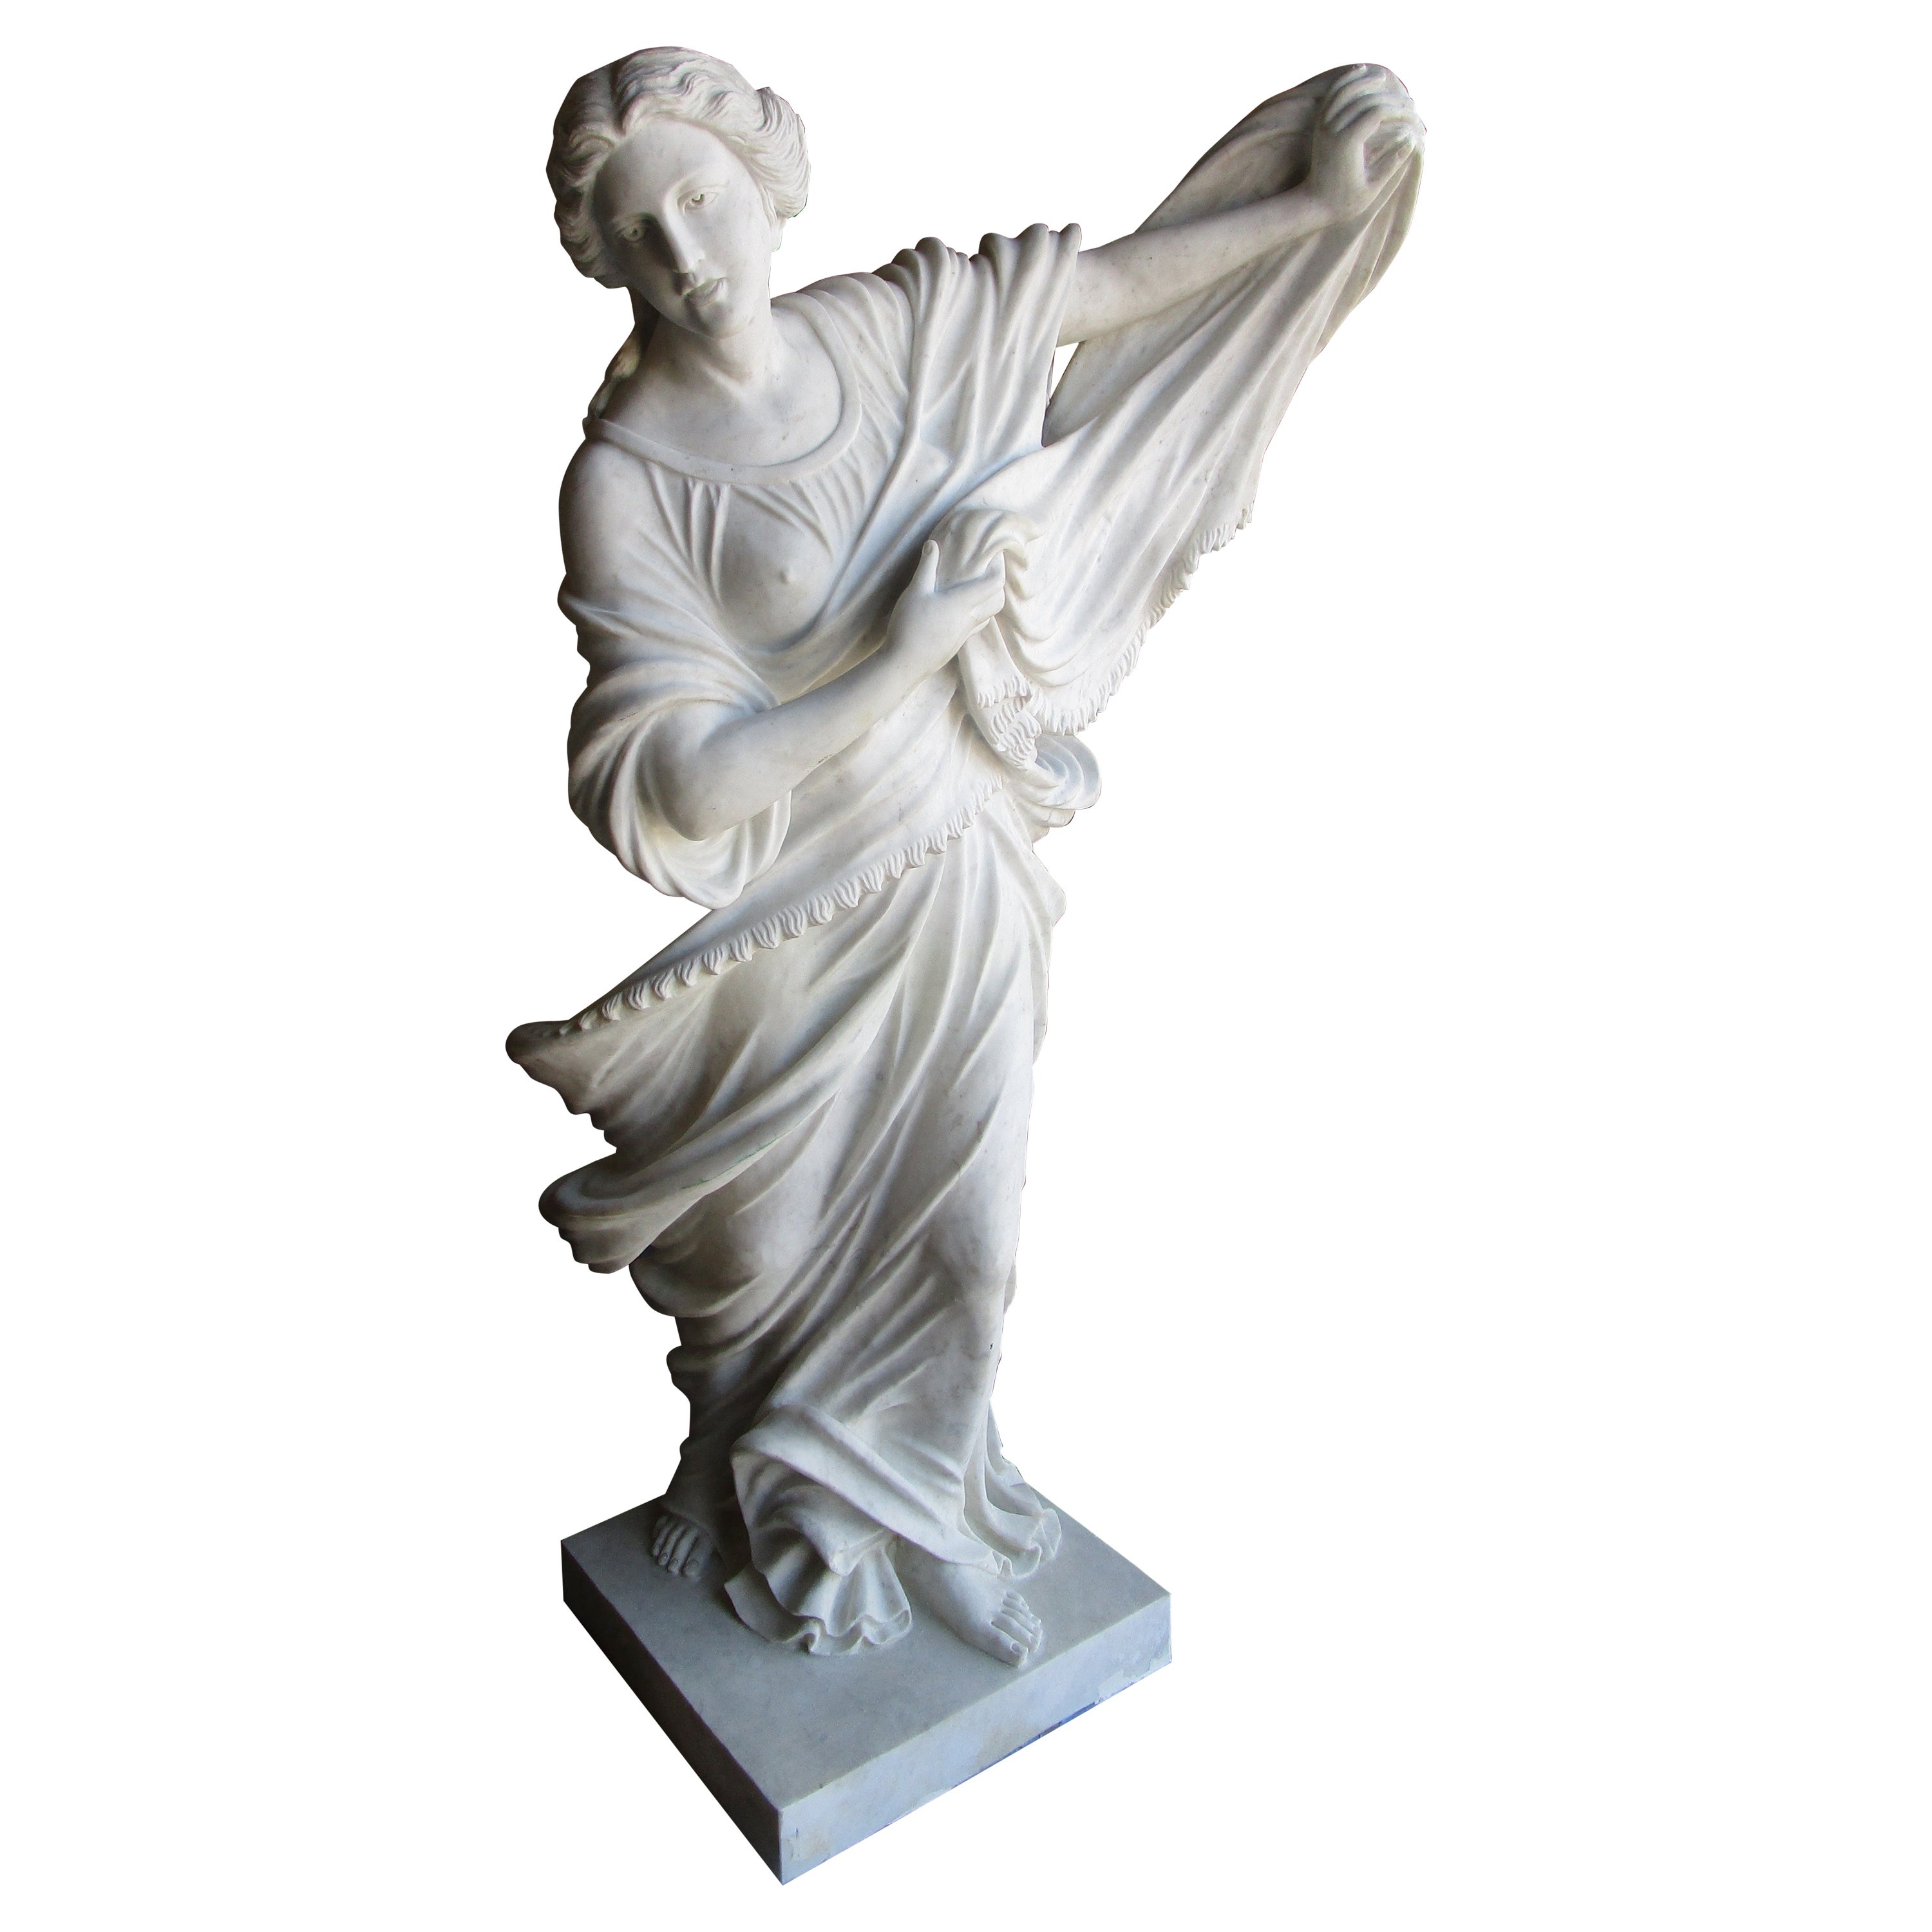 Une belle pièce du 19e siècle  Figure sculptée en marbre italien de Carrera, grandeur nature, de  une femme  